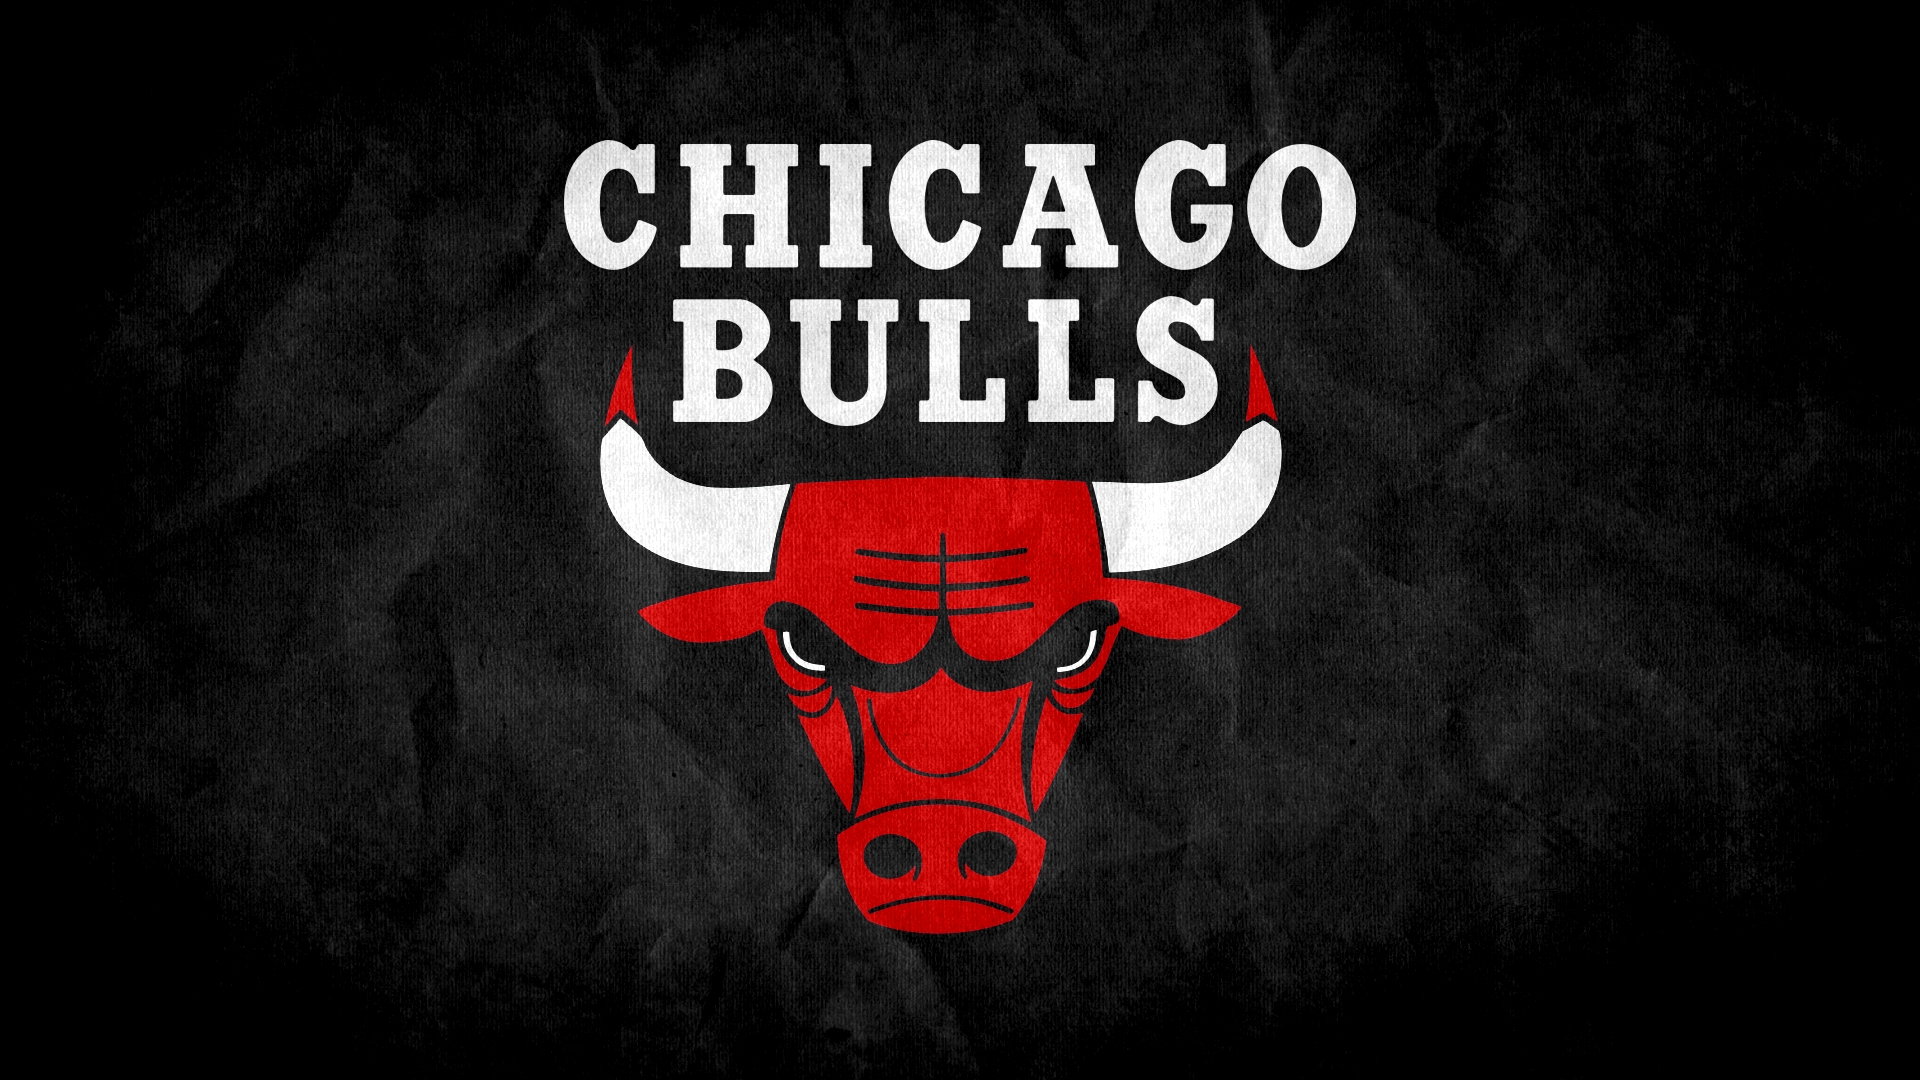  Chicago bulls Logo Wallpaper Background Full HD 1080p